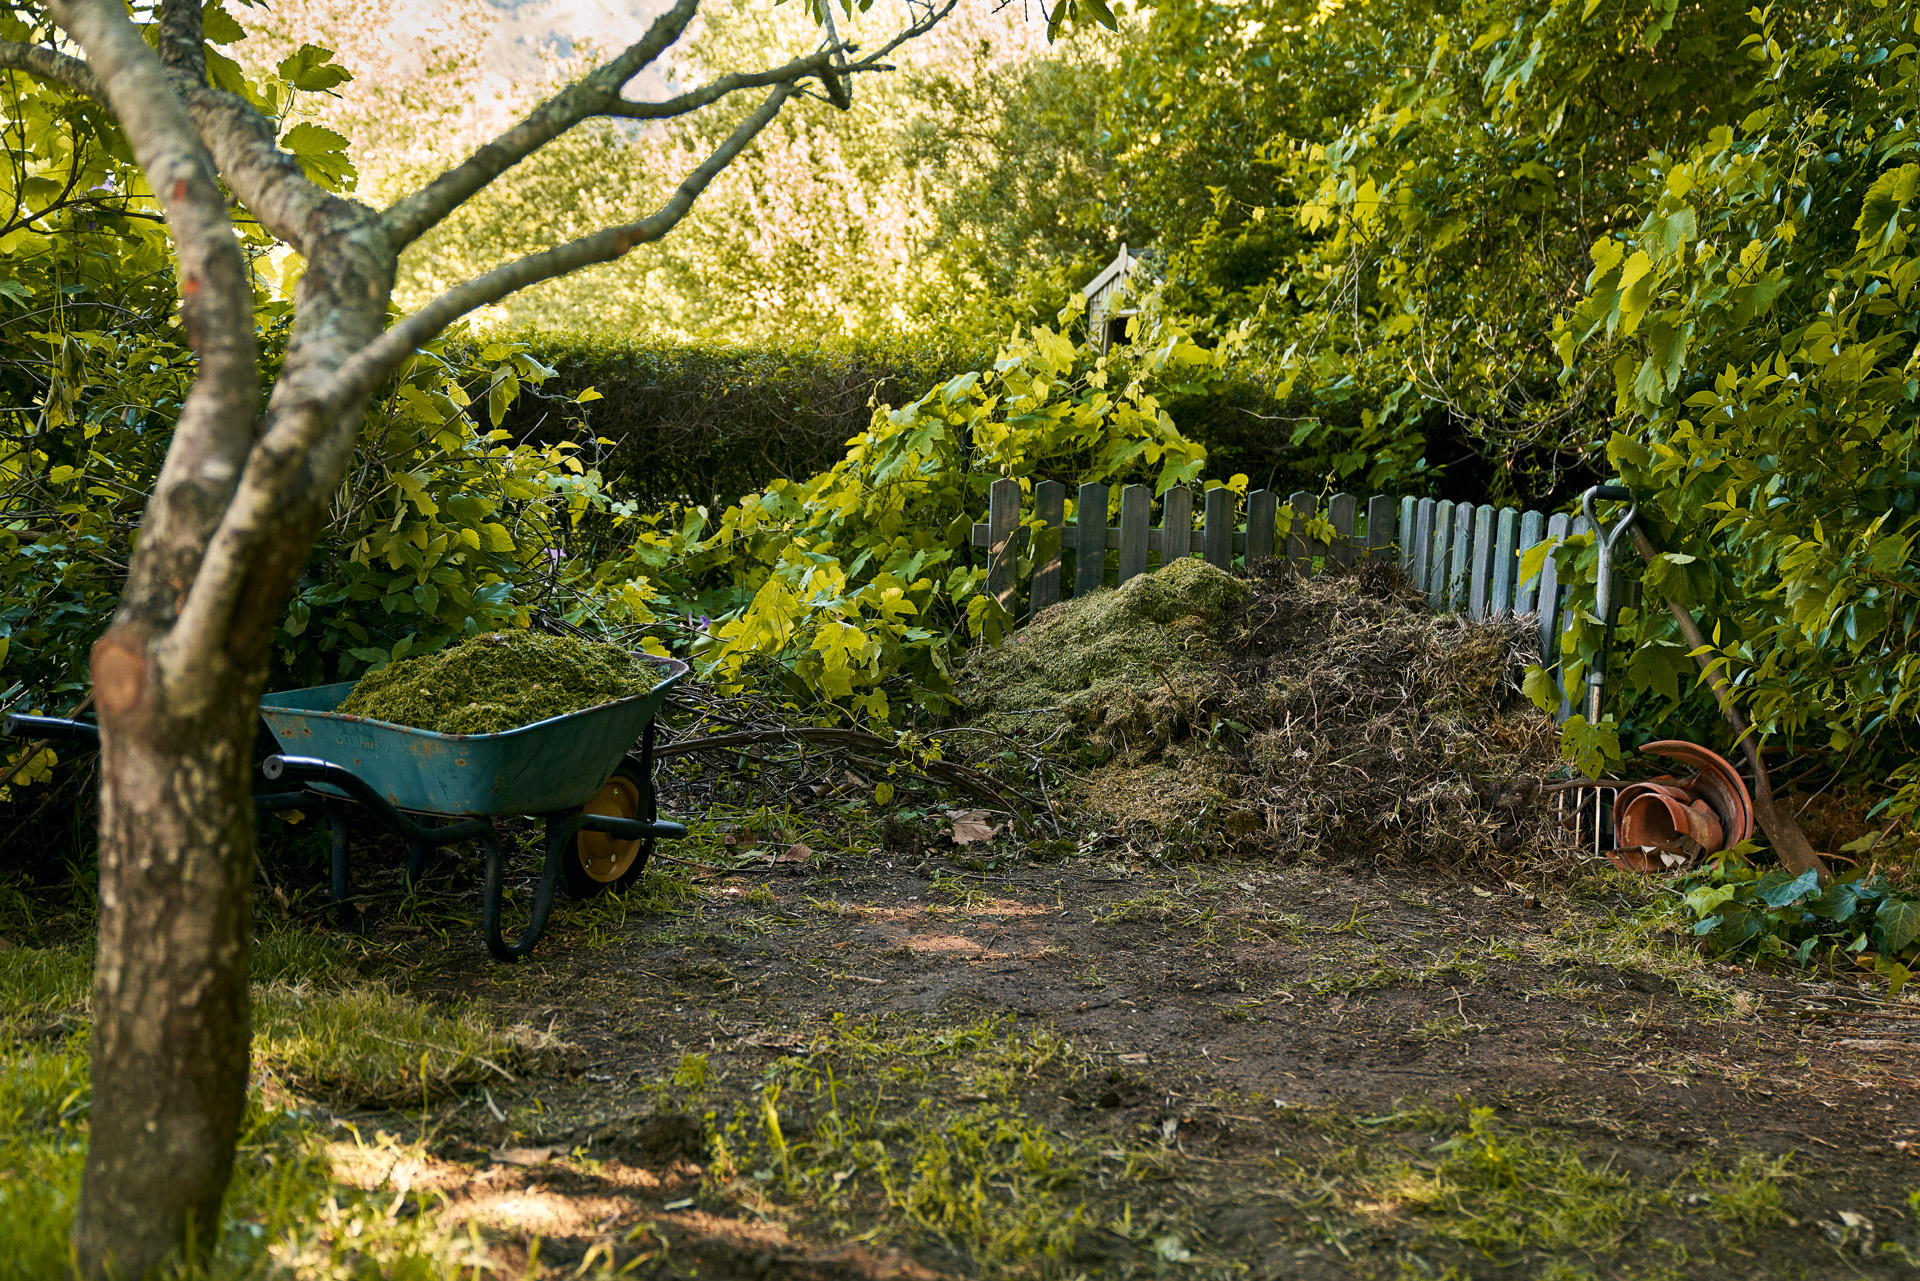 Una pila de compost y una carretilla en un rincón sombreado de un jardín tras tirar restos de poda.